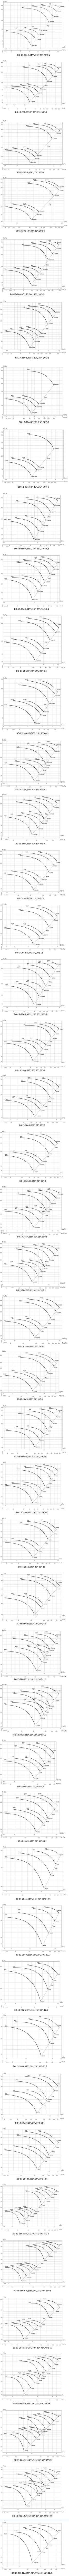 Аэродинамические характеристики ВО 13-284